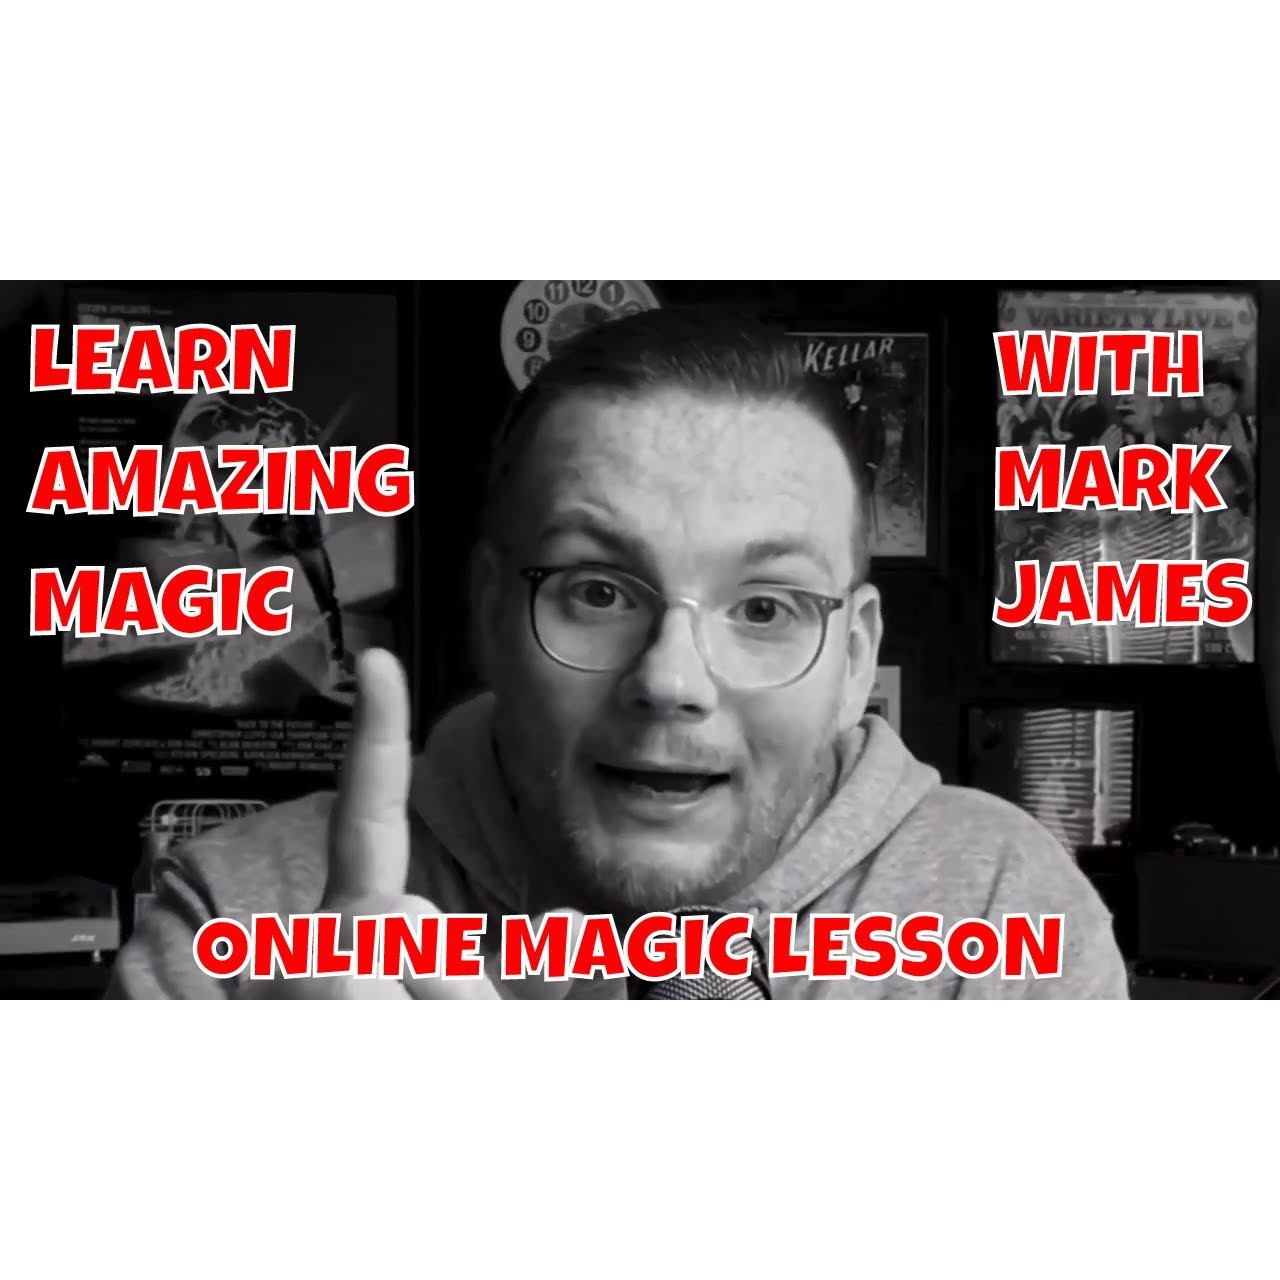 Alakazam Online Magic Academy - Mark James Academy 2